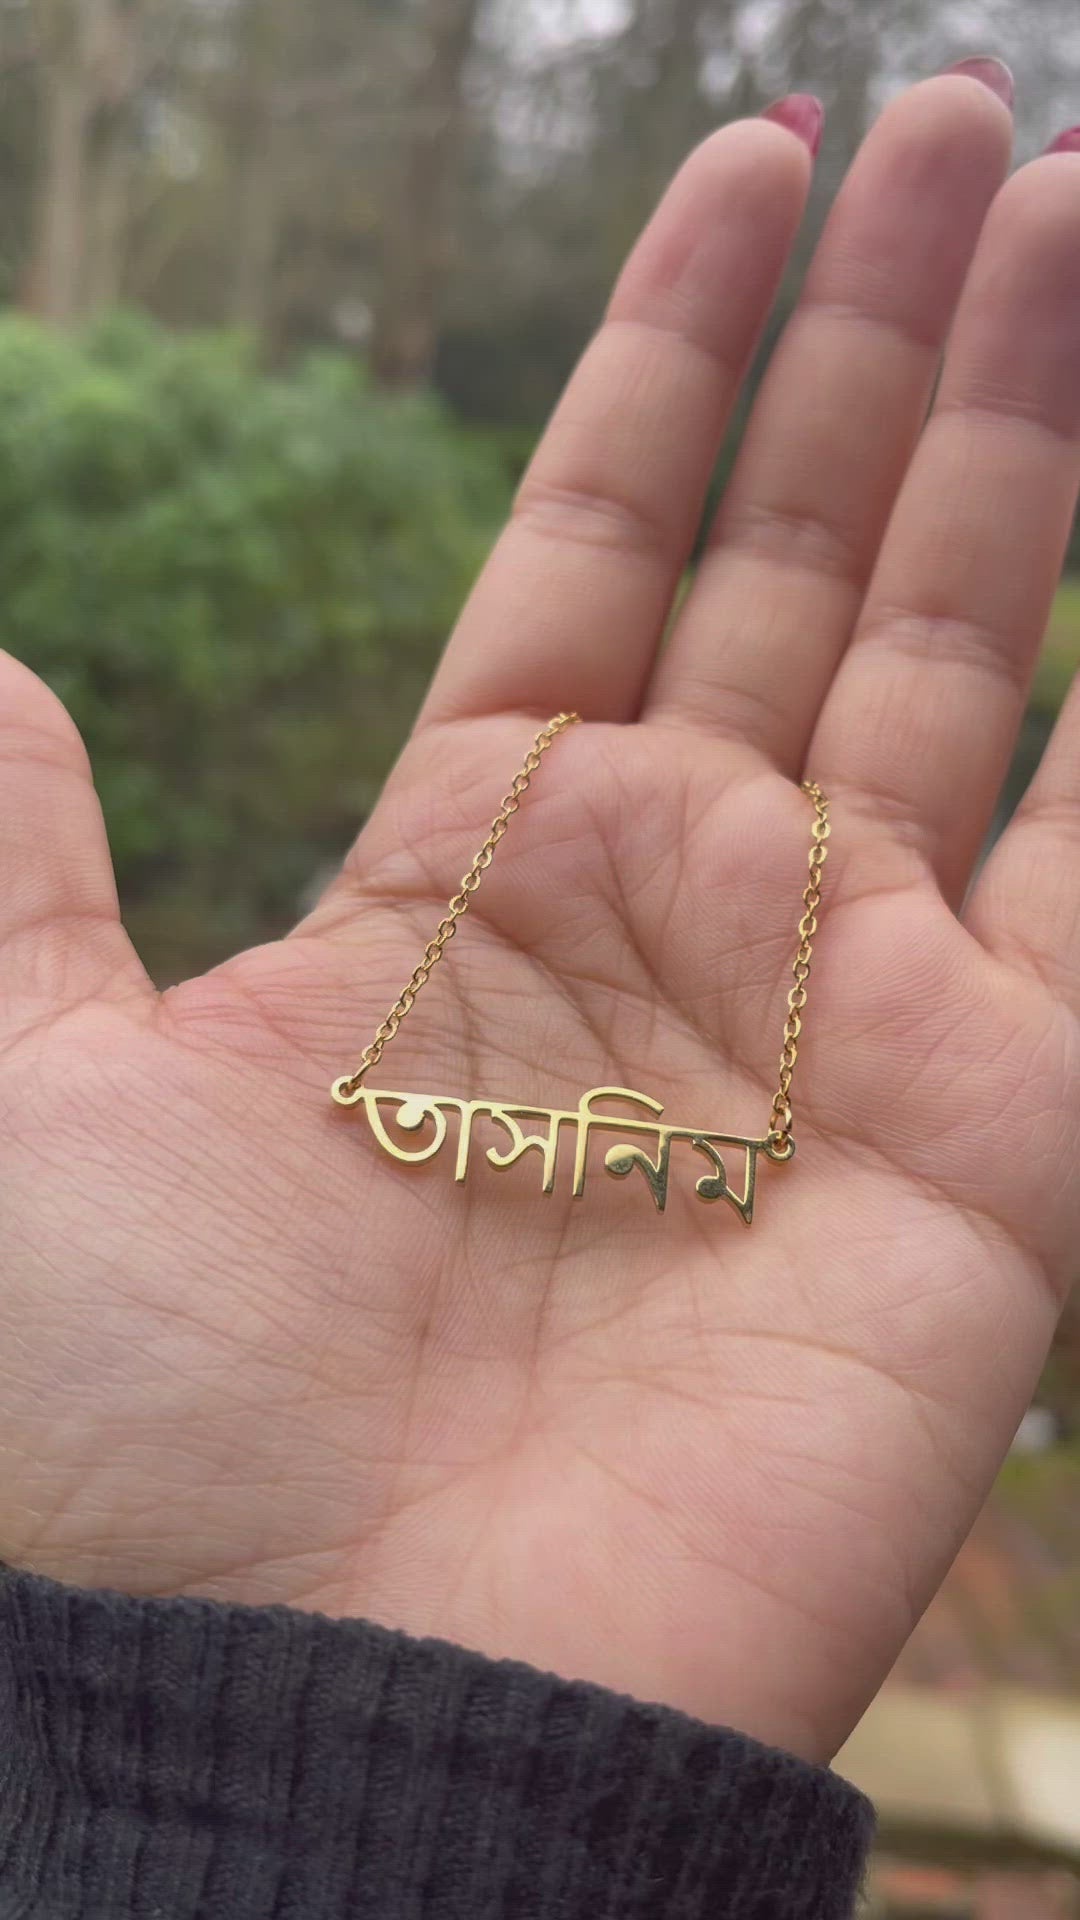 personalised bengali bangla name necklace